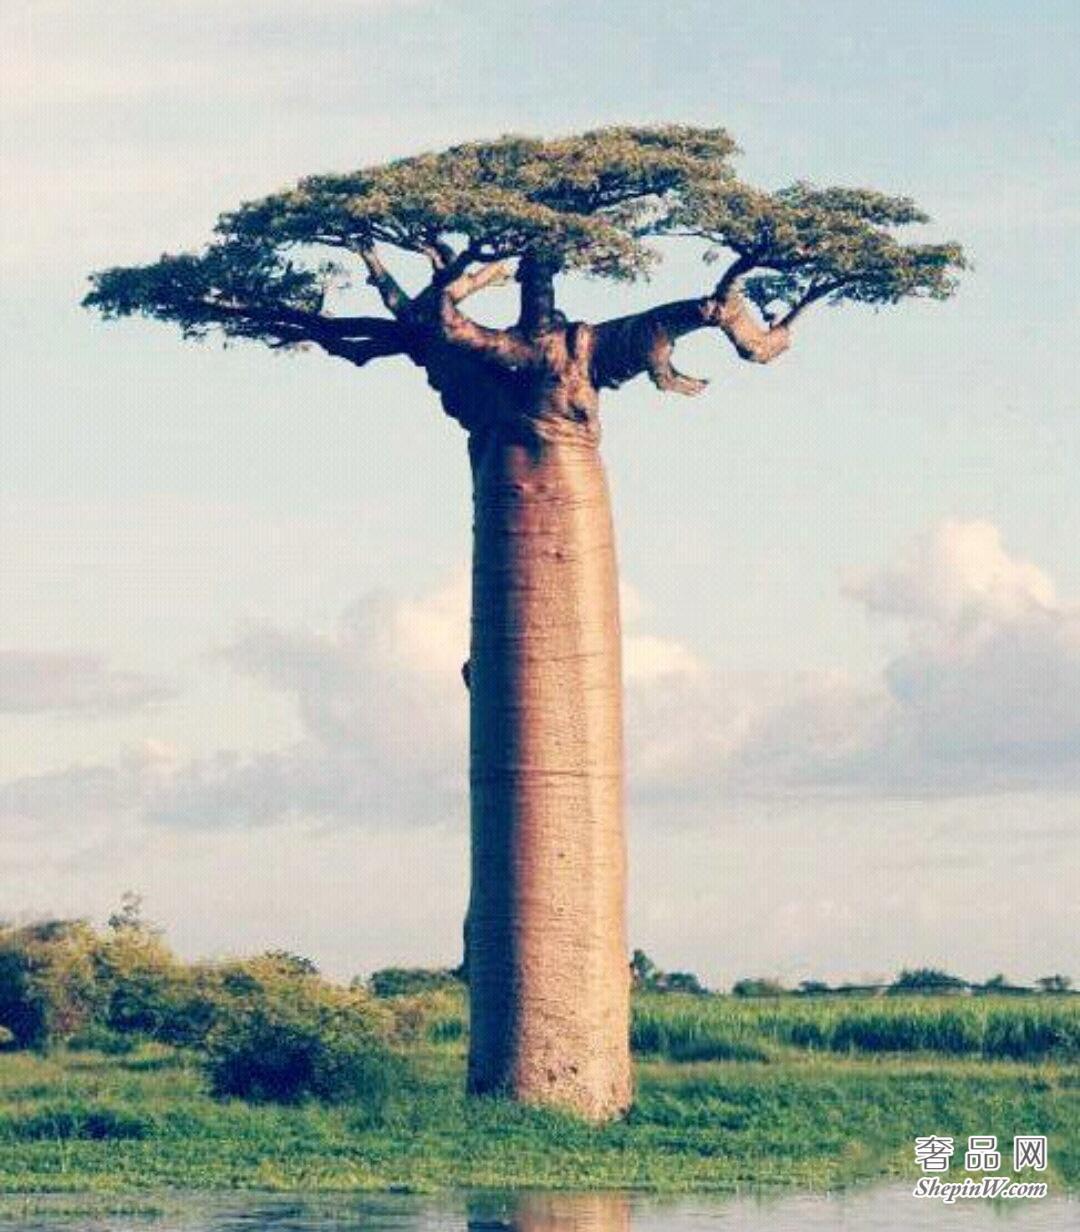 植物界的老寿星 猴面包树又叫波巴布树 其寿命可活5000年左右